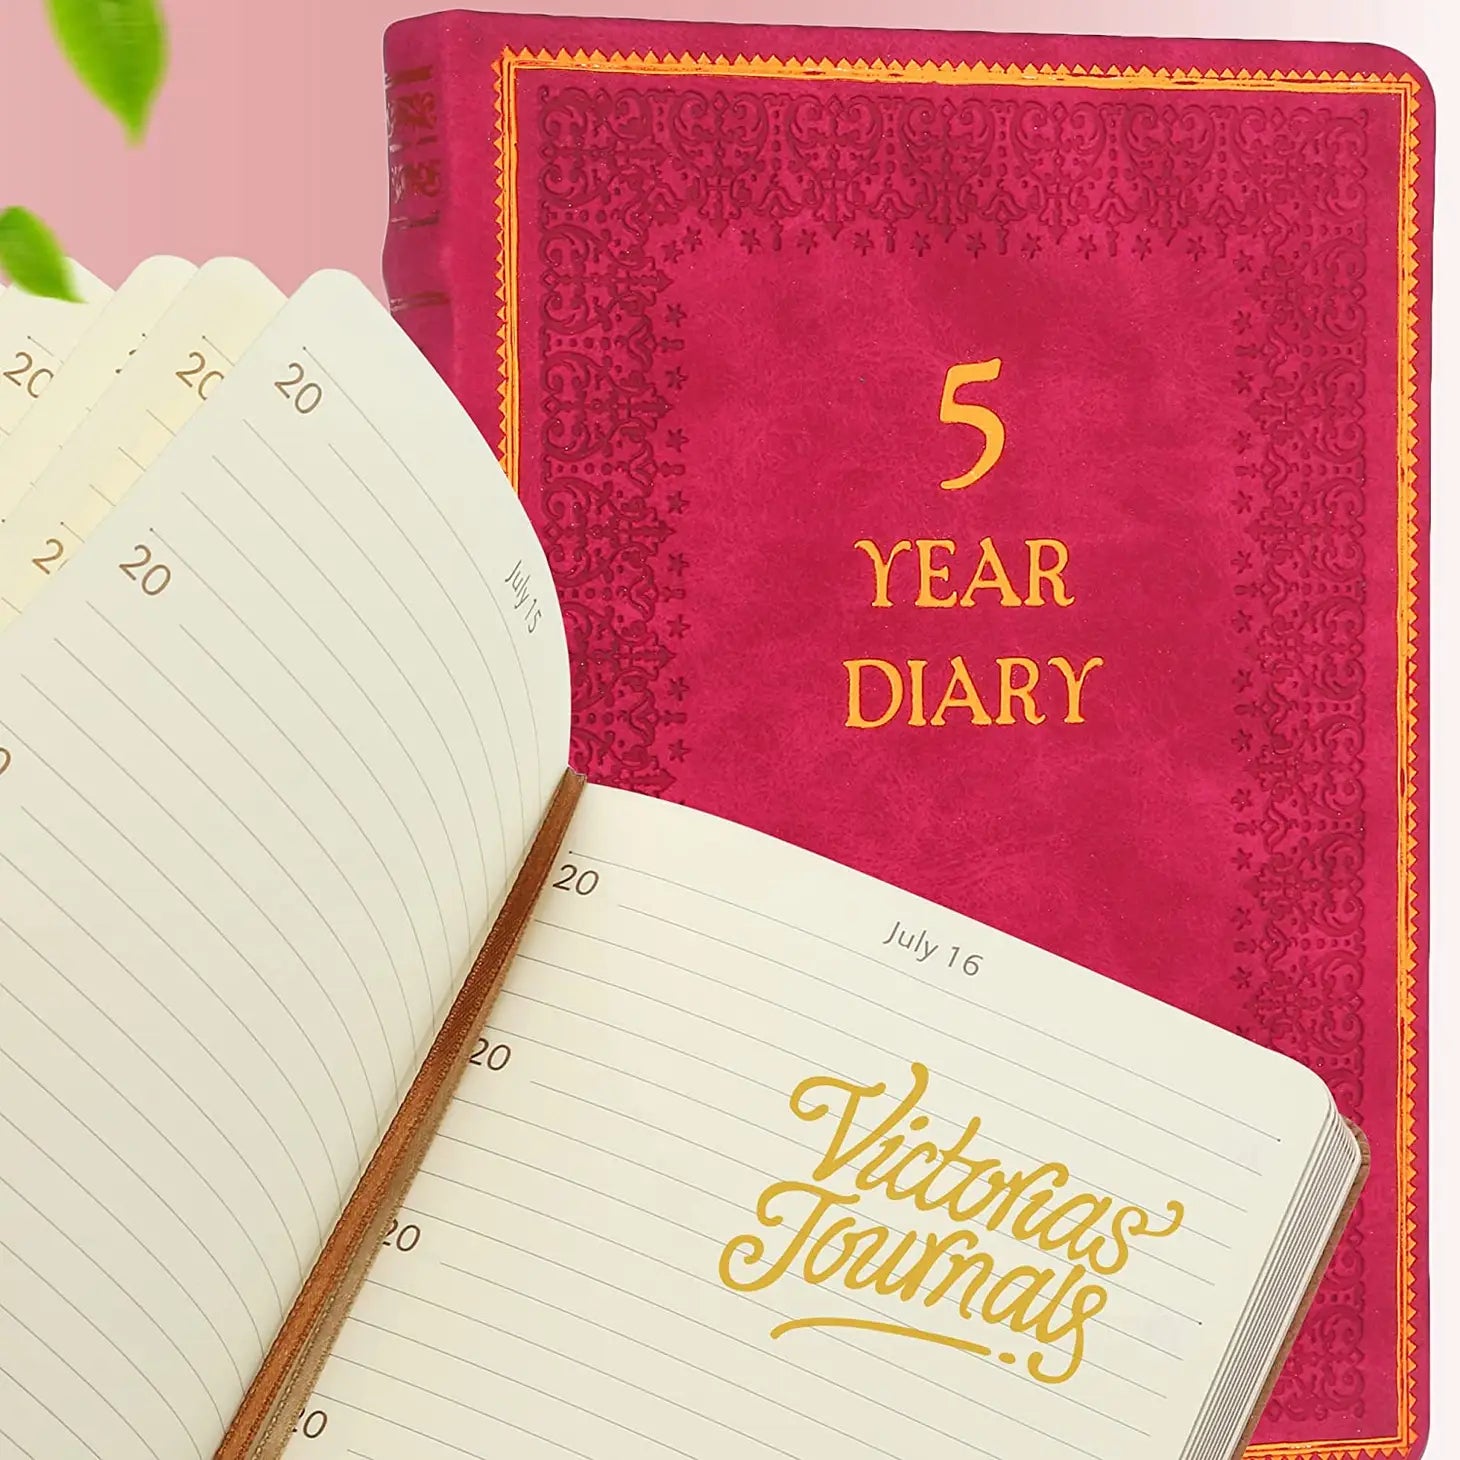 Victoria's Journals - 5 Year Journals